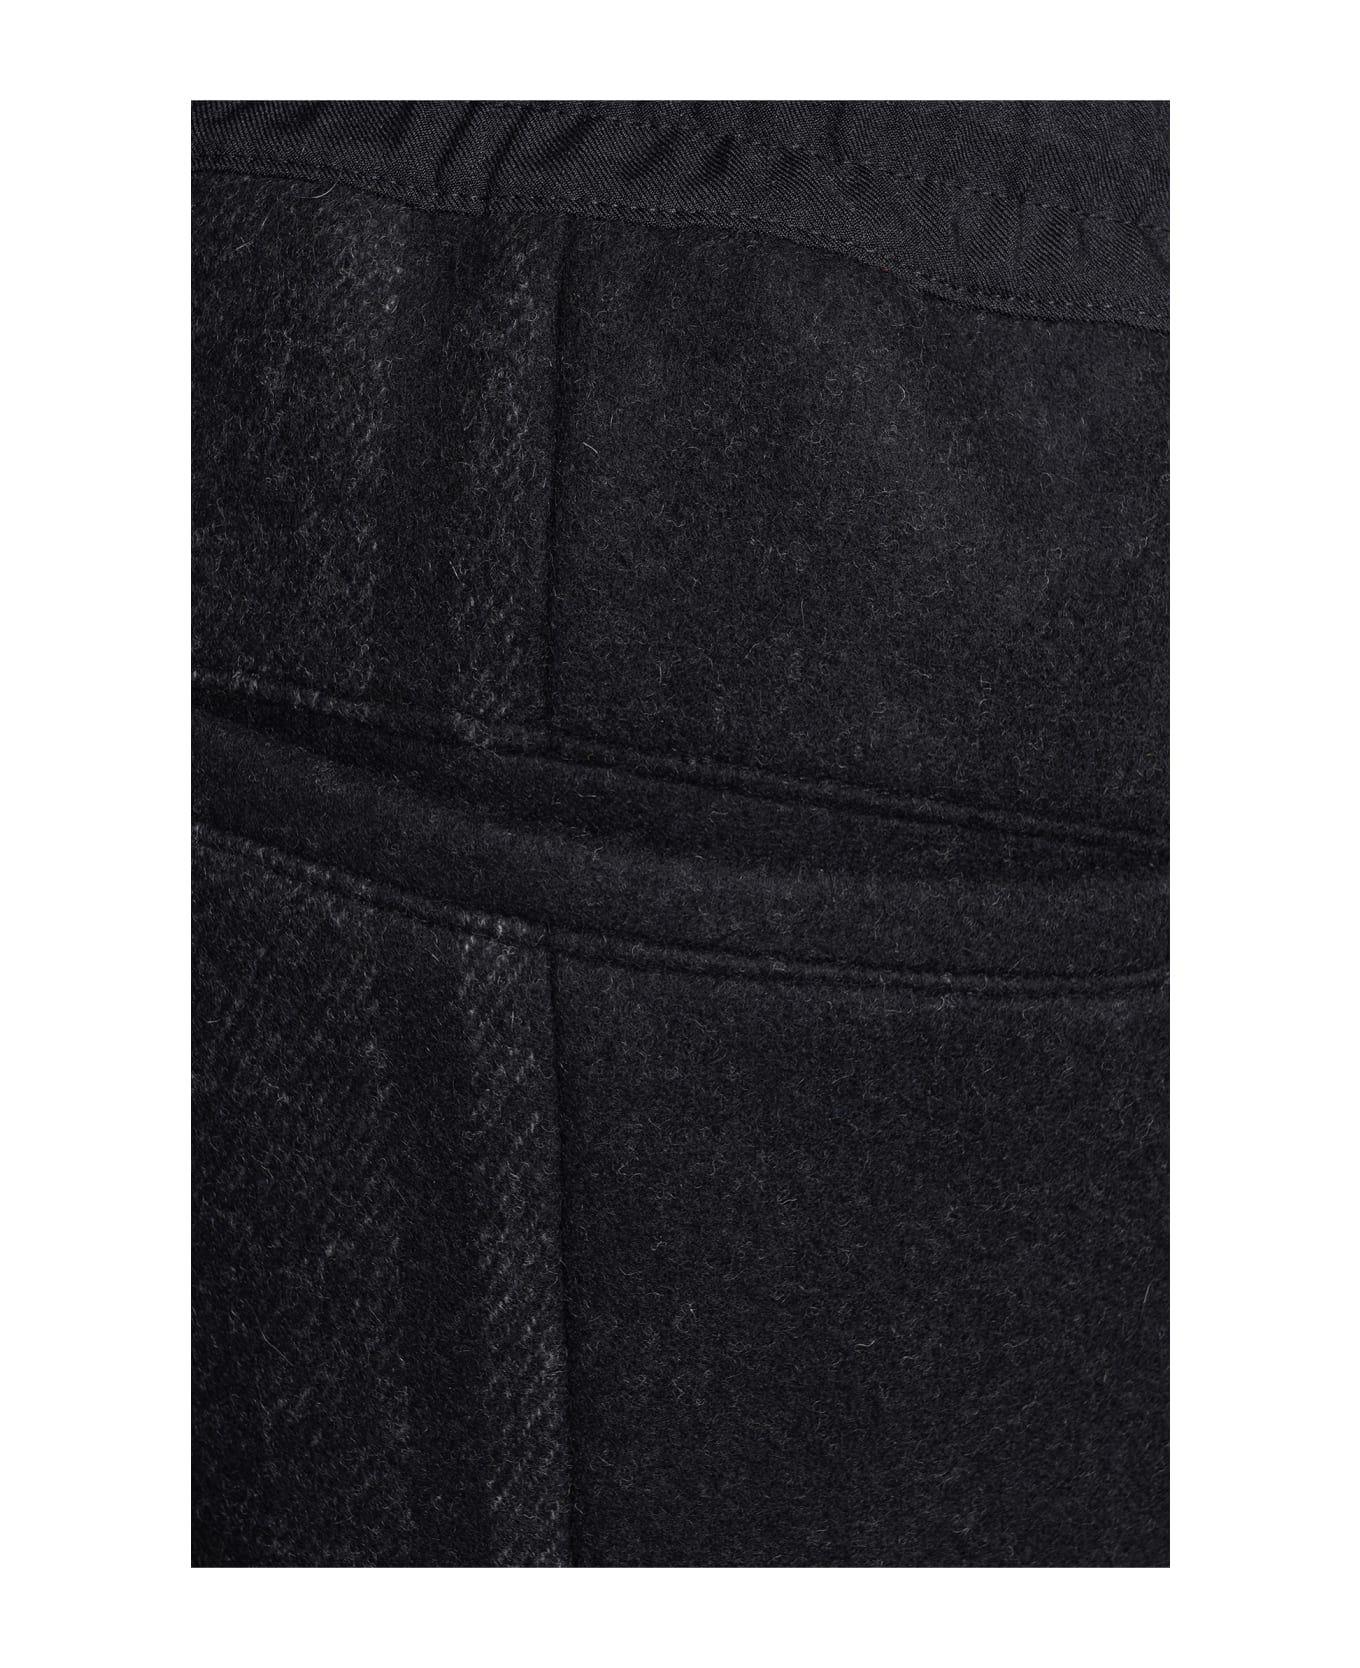 Y-3 Pants In Black Polyester - Black